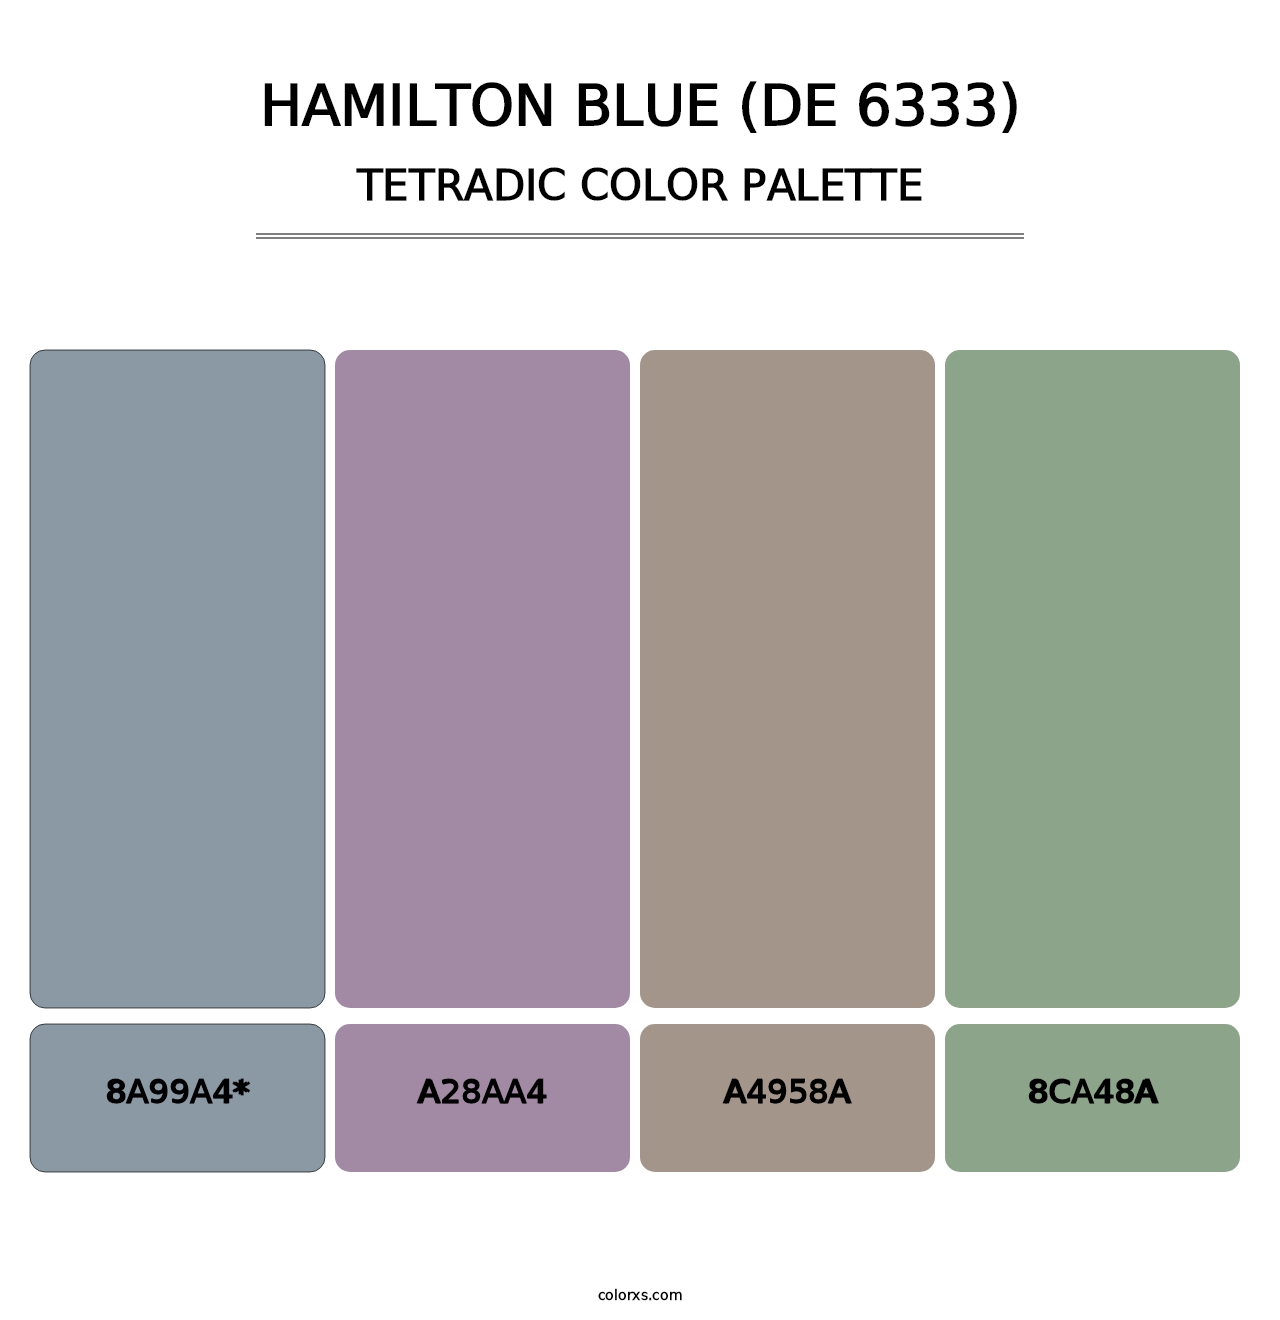 Hamilton Blue (DE 6333) - Tetradic Color Palette